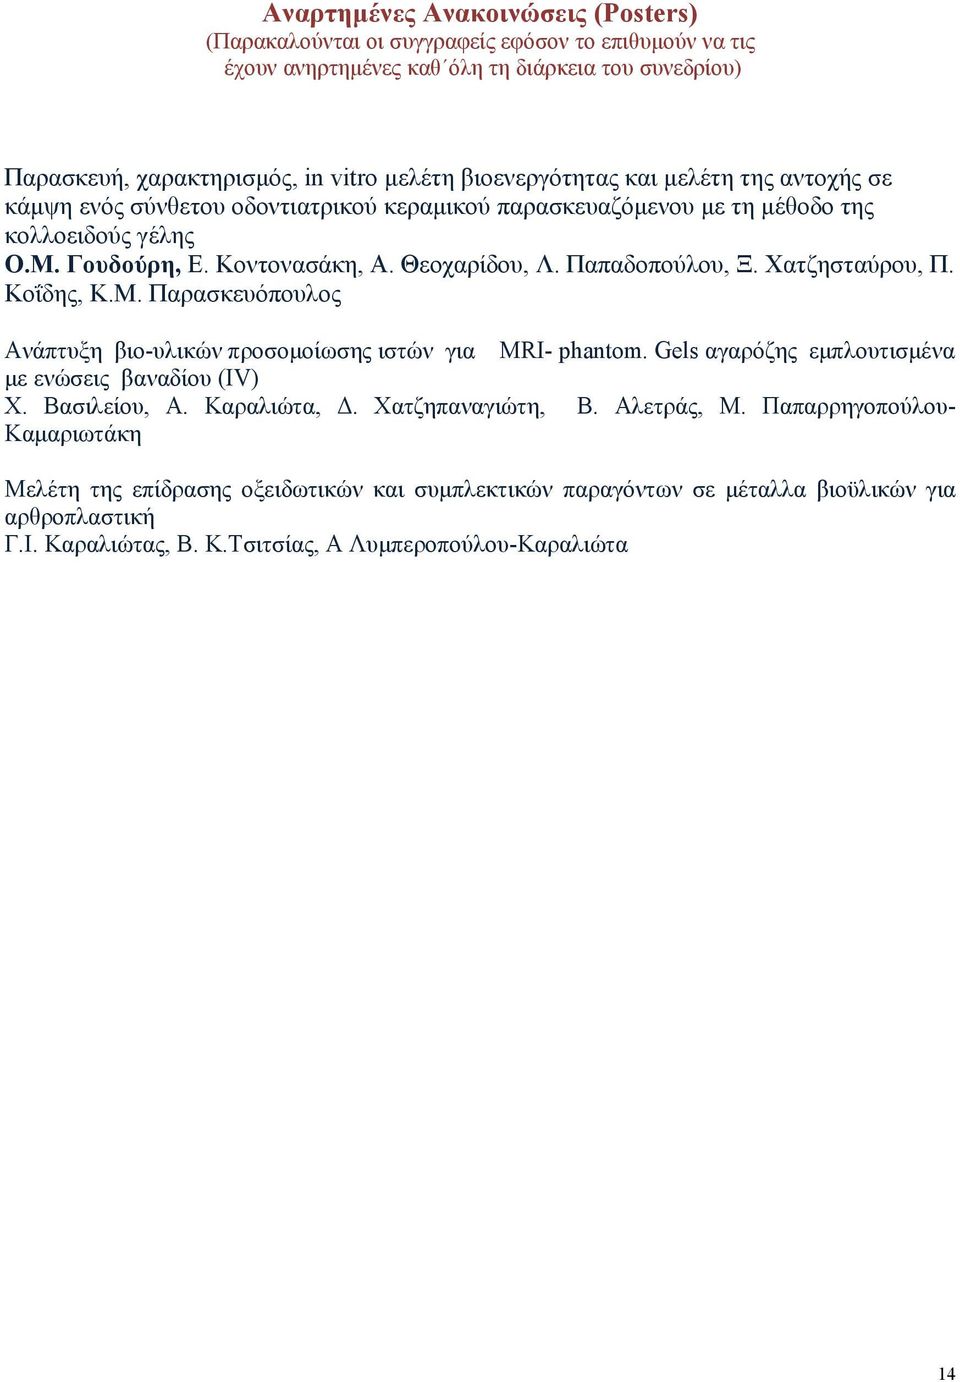 Παπαδοπούλου, Ξ. Χατζησταύρου, Π. Κοΐδης, K.M. Παρασκευόπουλος νάπτυξη βιο-υλικών προσομοίωσης ιστών για MRI- phantom. Gels αγαρόζης εμπλουτισμένα με ενώσεις βαναδίου (IV) Χ. ασιλείου, A.